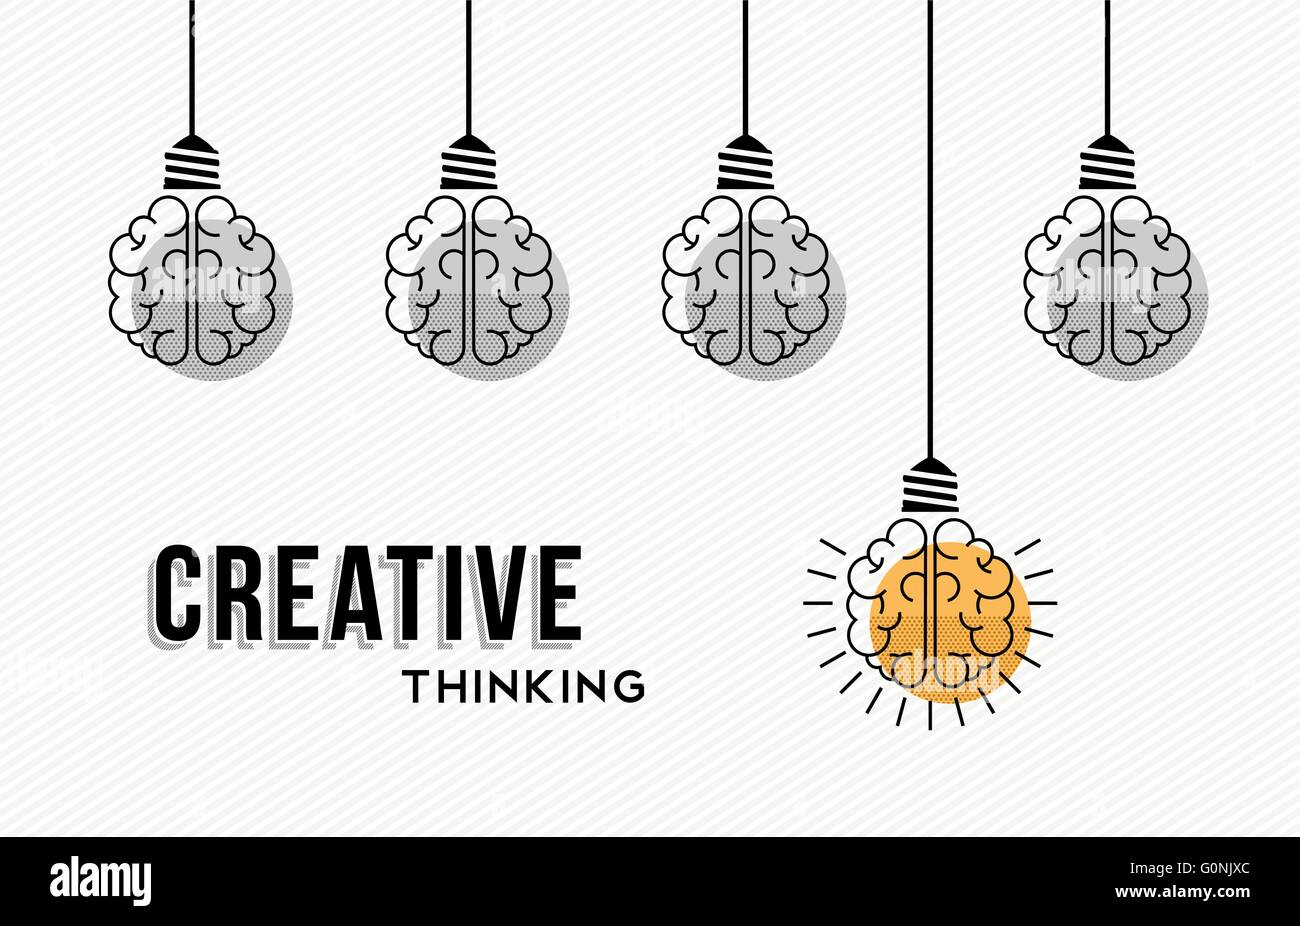 Moderne kreatives Denken Konzeption, Gehirne Mensch in schwarz und weiß mit bunten immer eine Idee. EPS10 Vektor. Stock Vektor